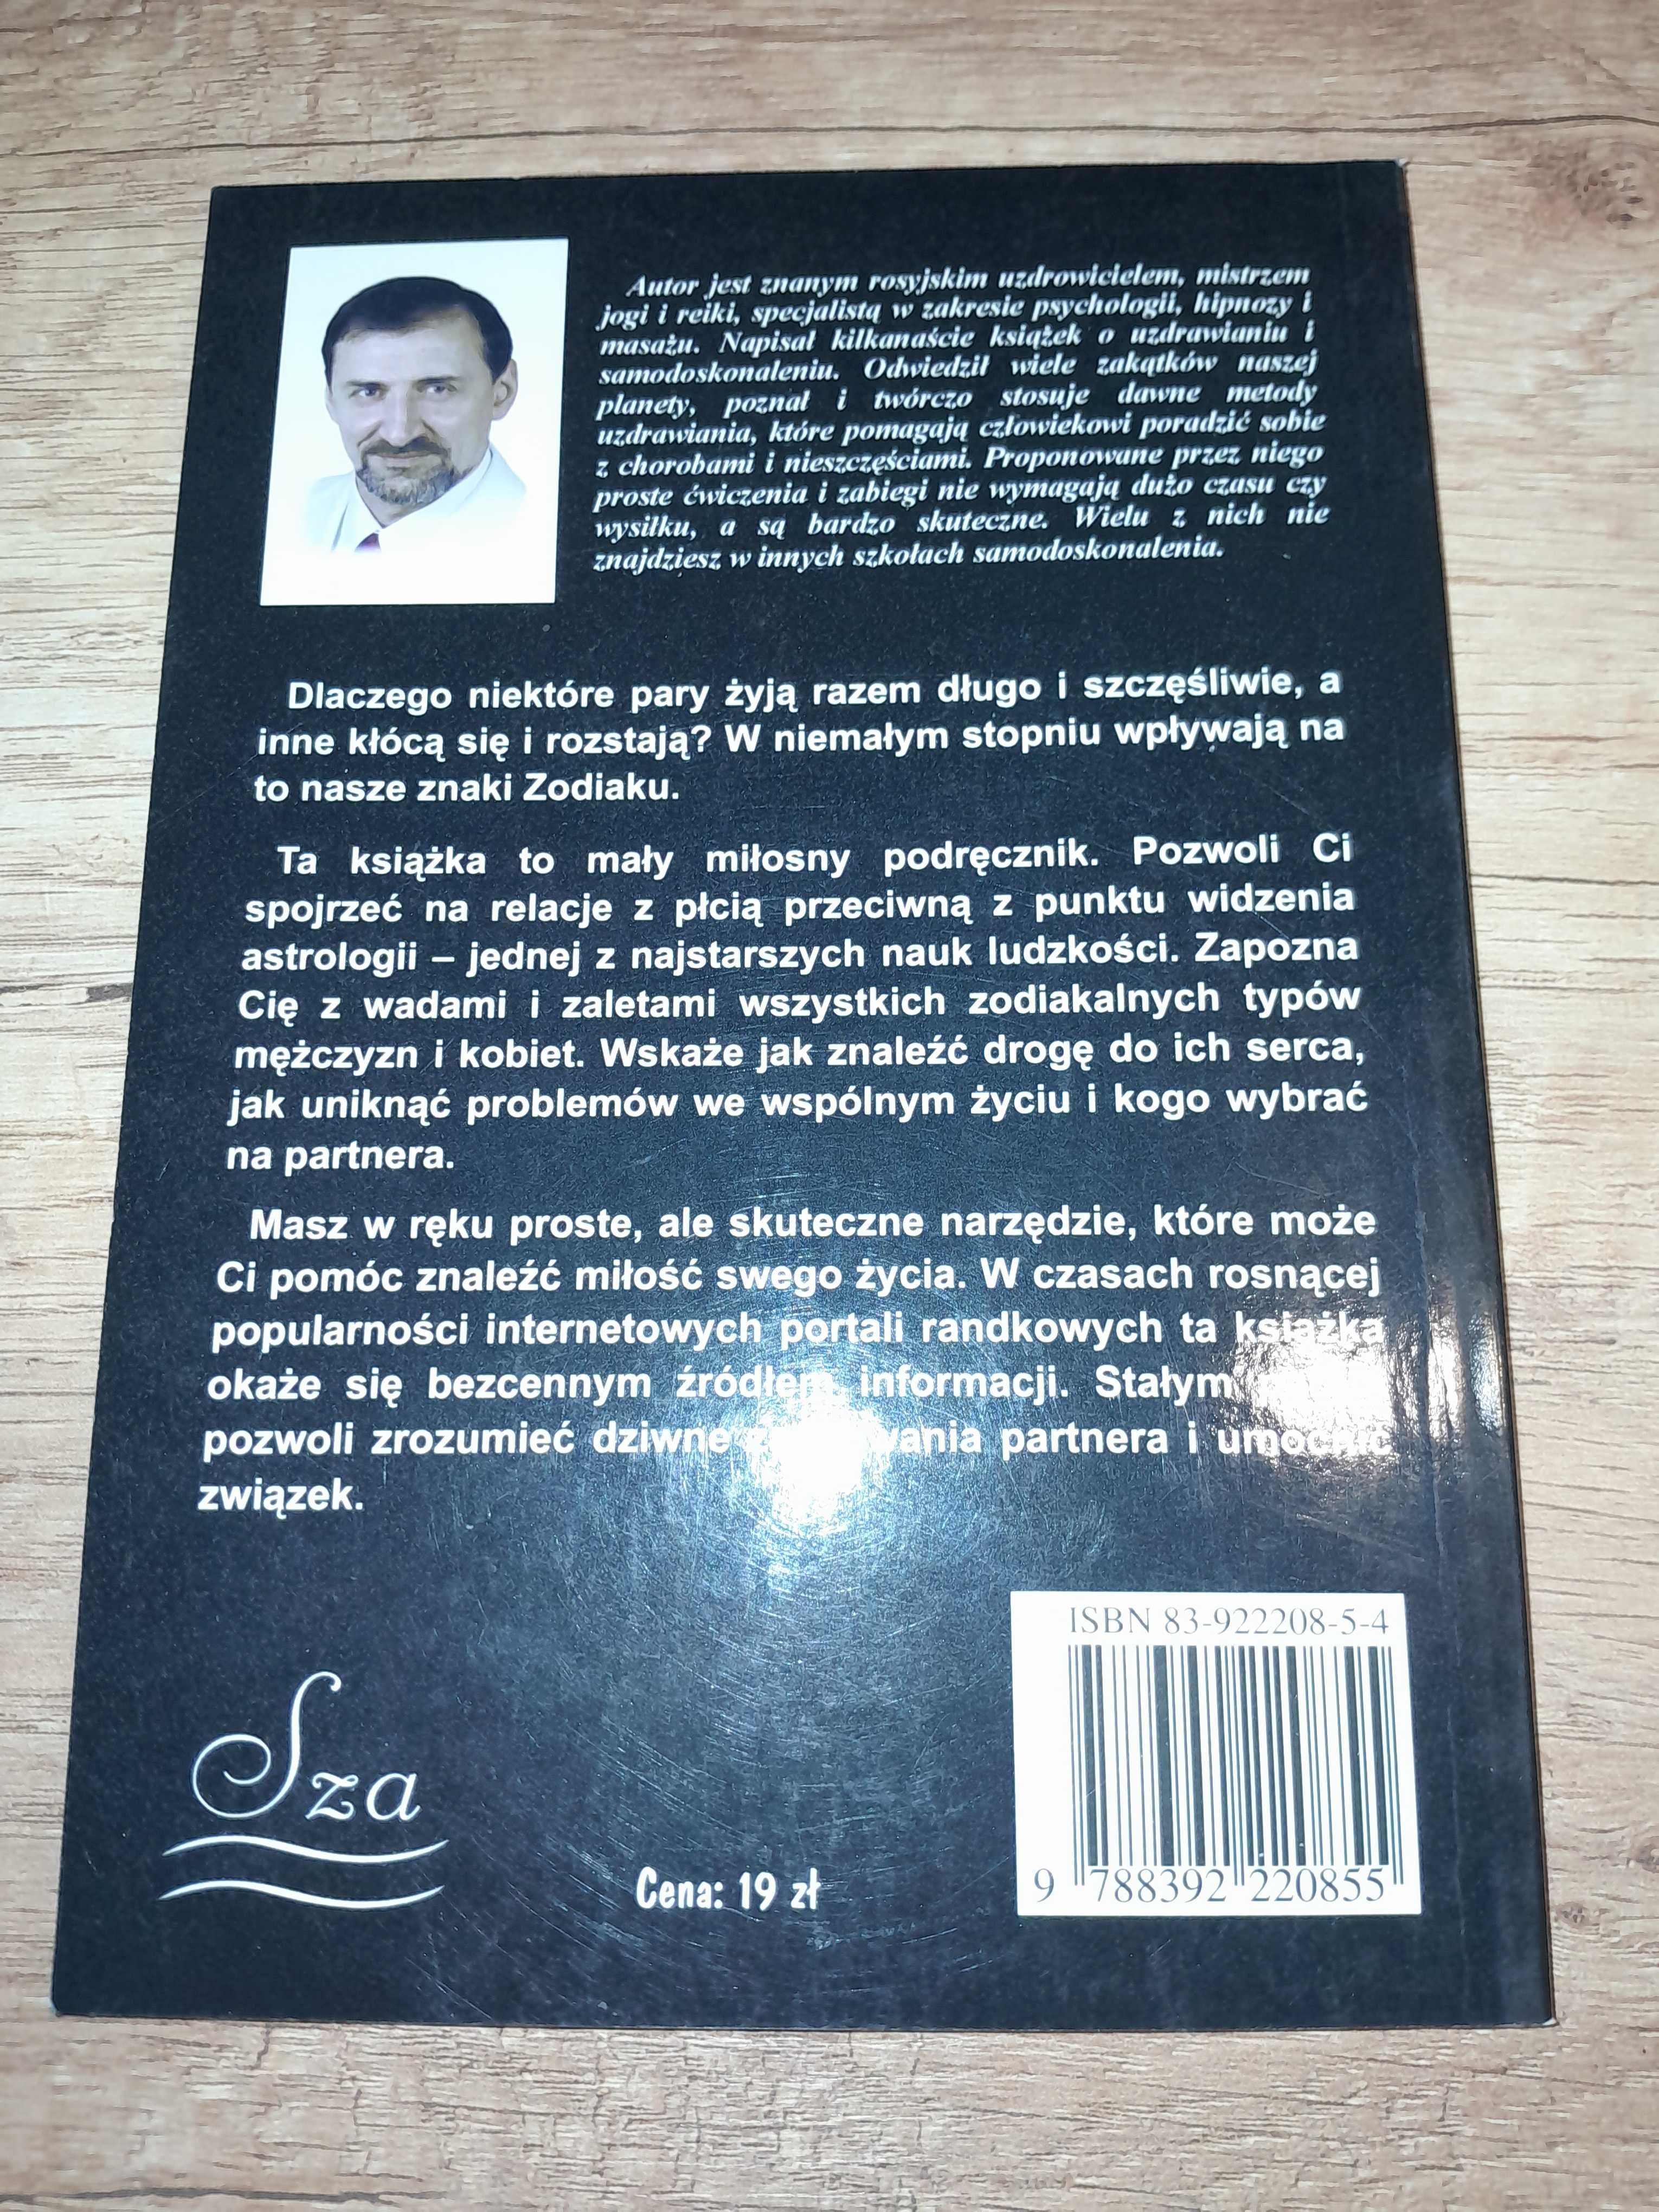 Lewszynow Ta książka przyniesie Ci miłość astrologia